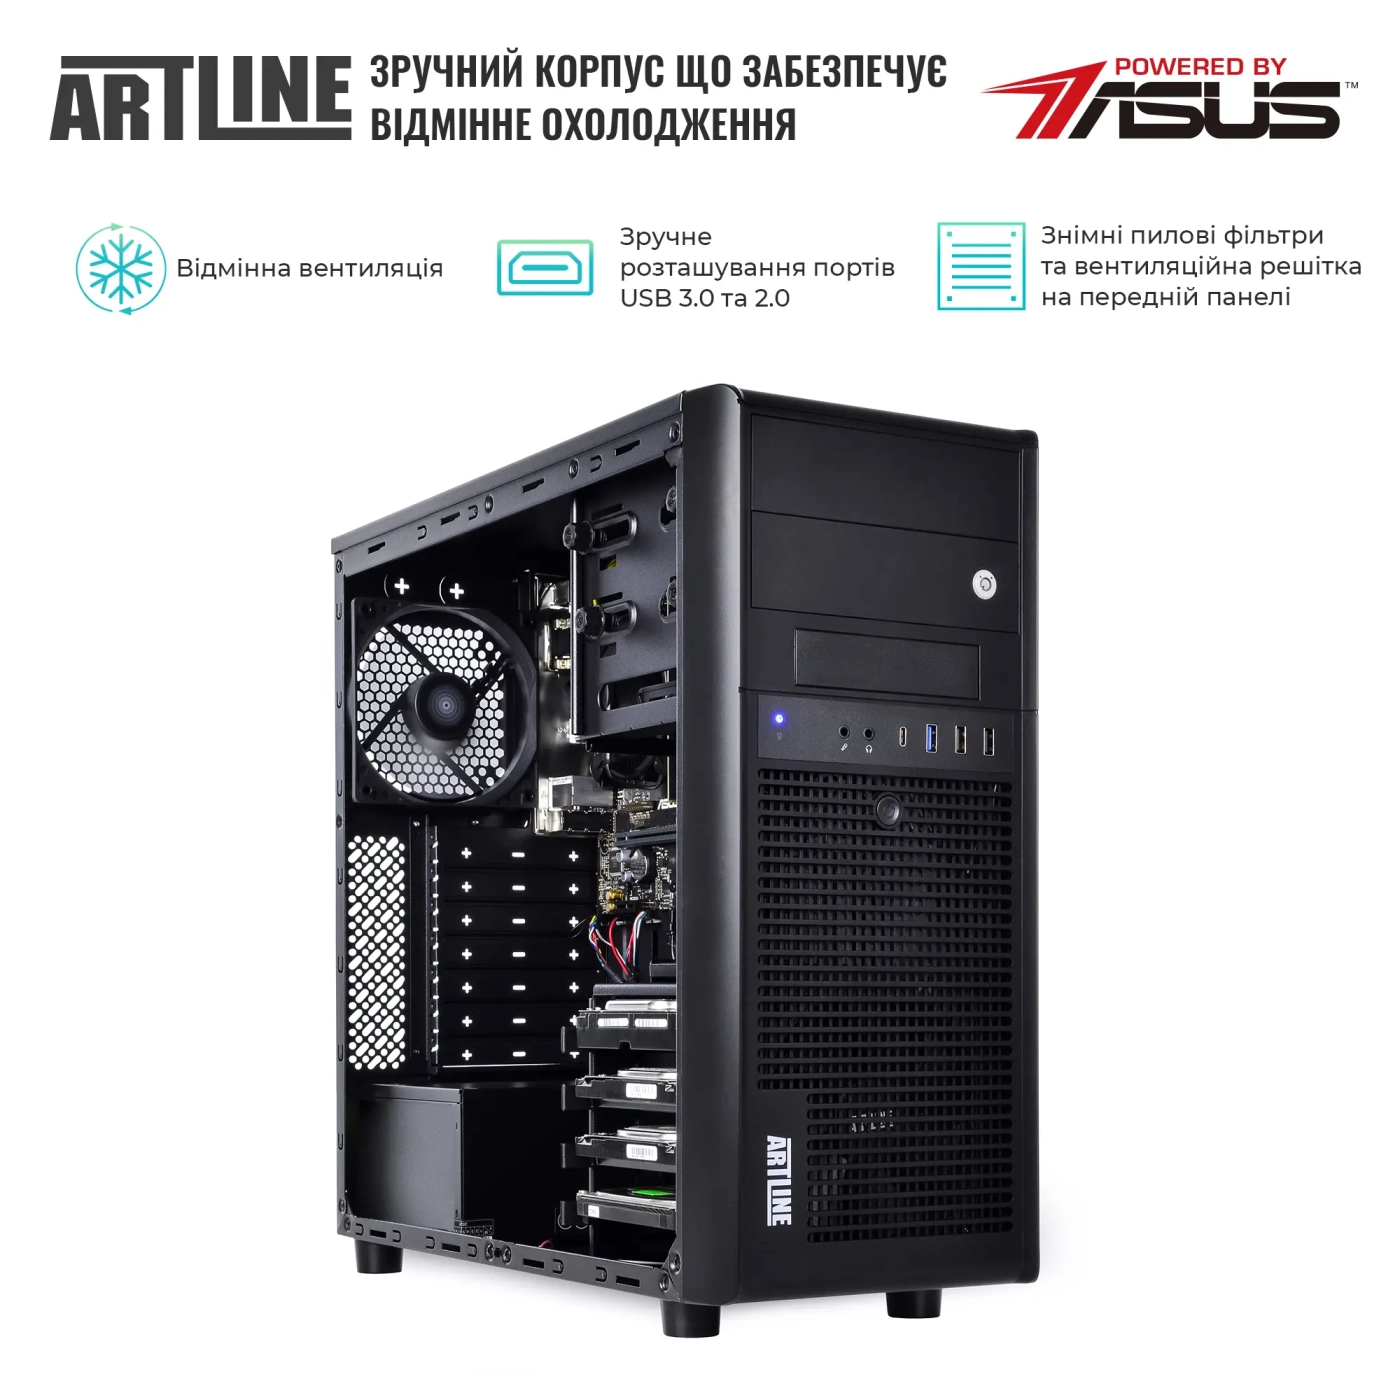 Купить Сервер ARTLINE Business T35 (T35v41) - фото 3